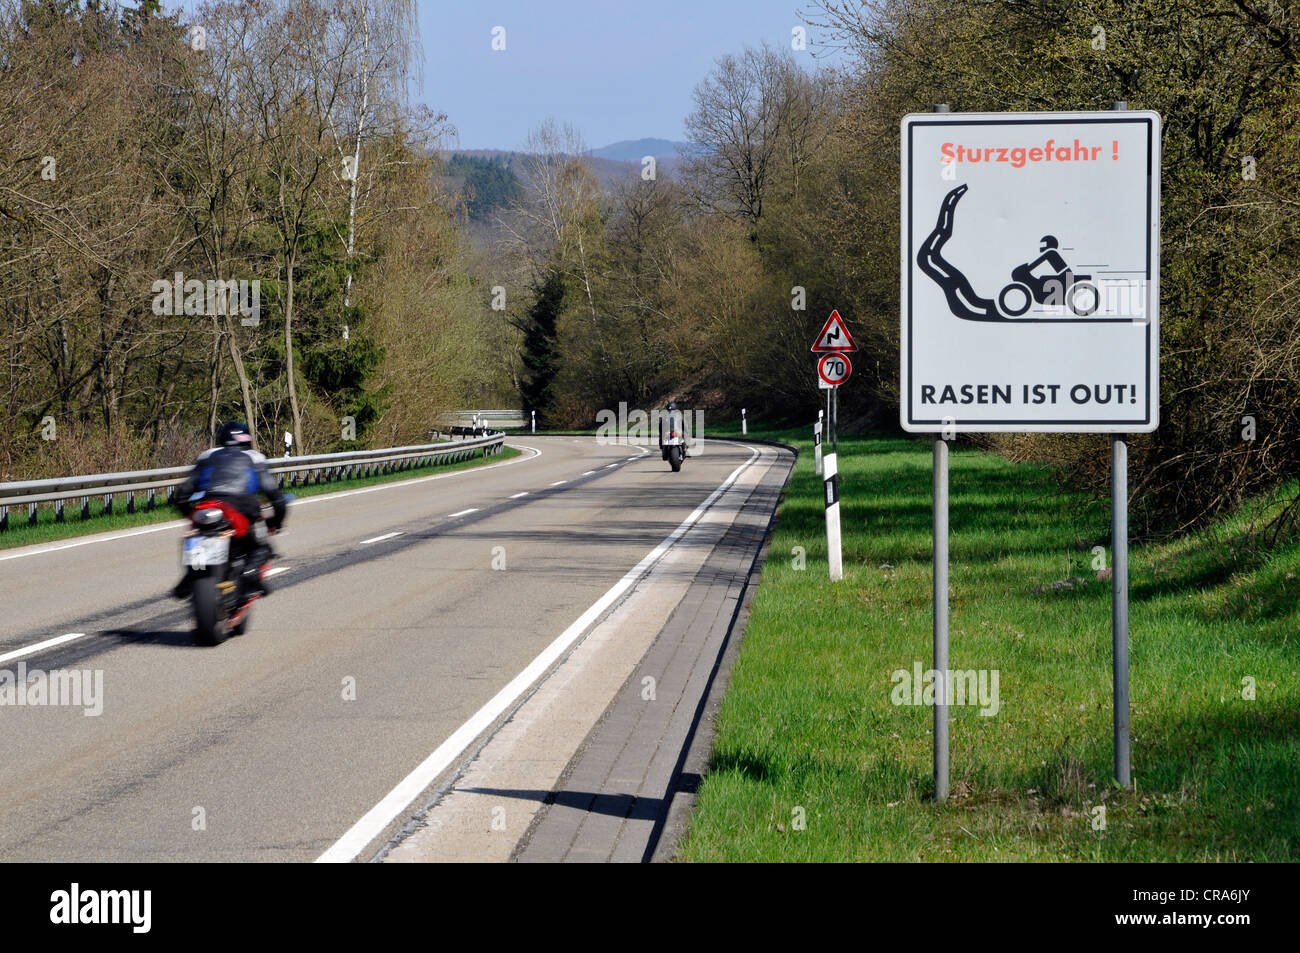 Motociclista sulla strada di un paese con un segnale di avvertimento, Sturzgefahr - Rasun ist, Tedesco per curve pericolose - assenza di accelerazione Foto Stock